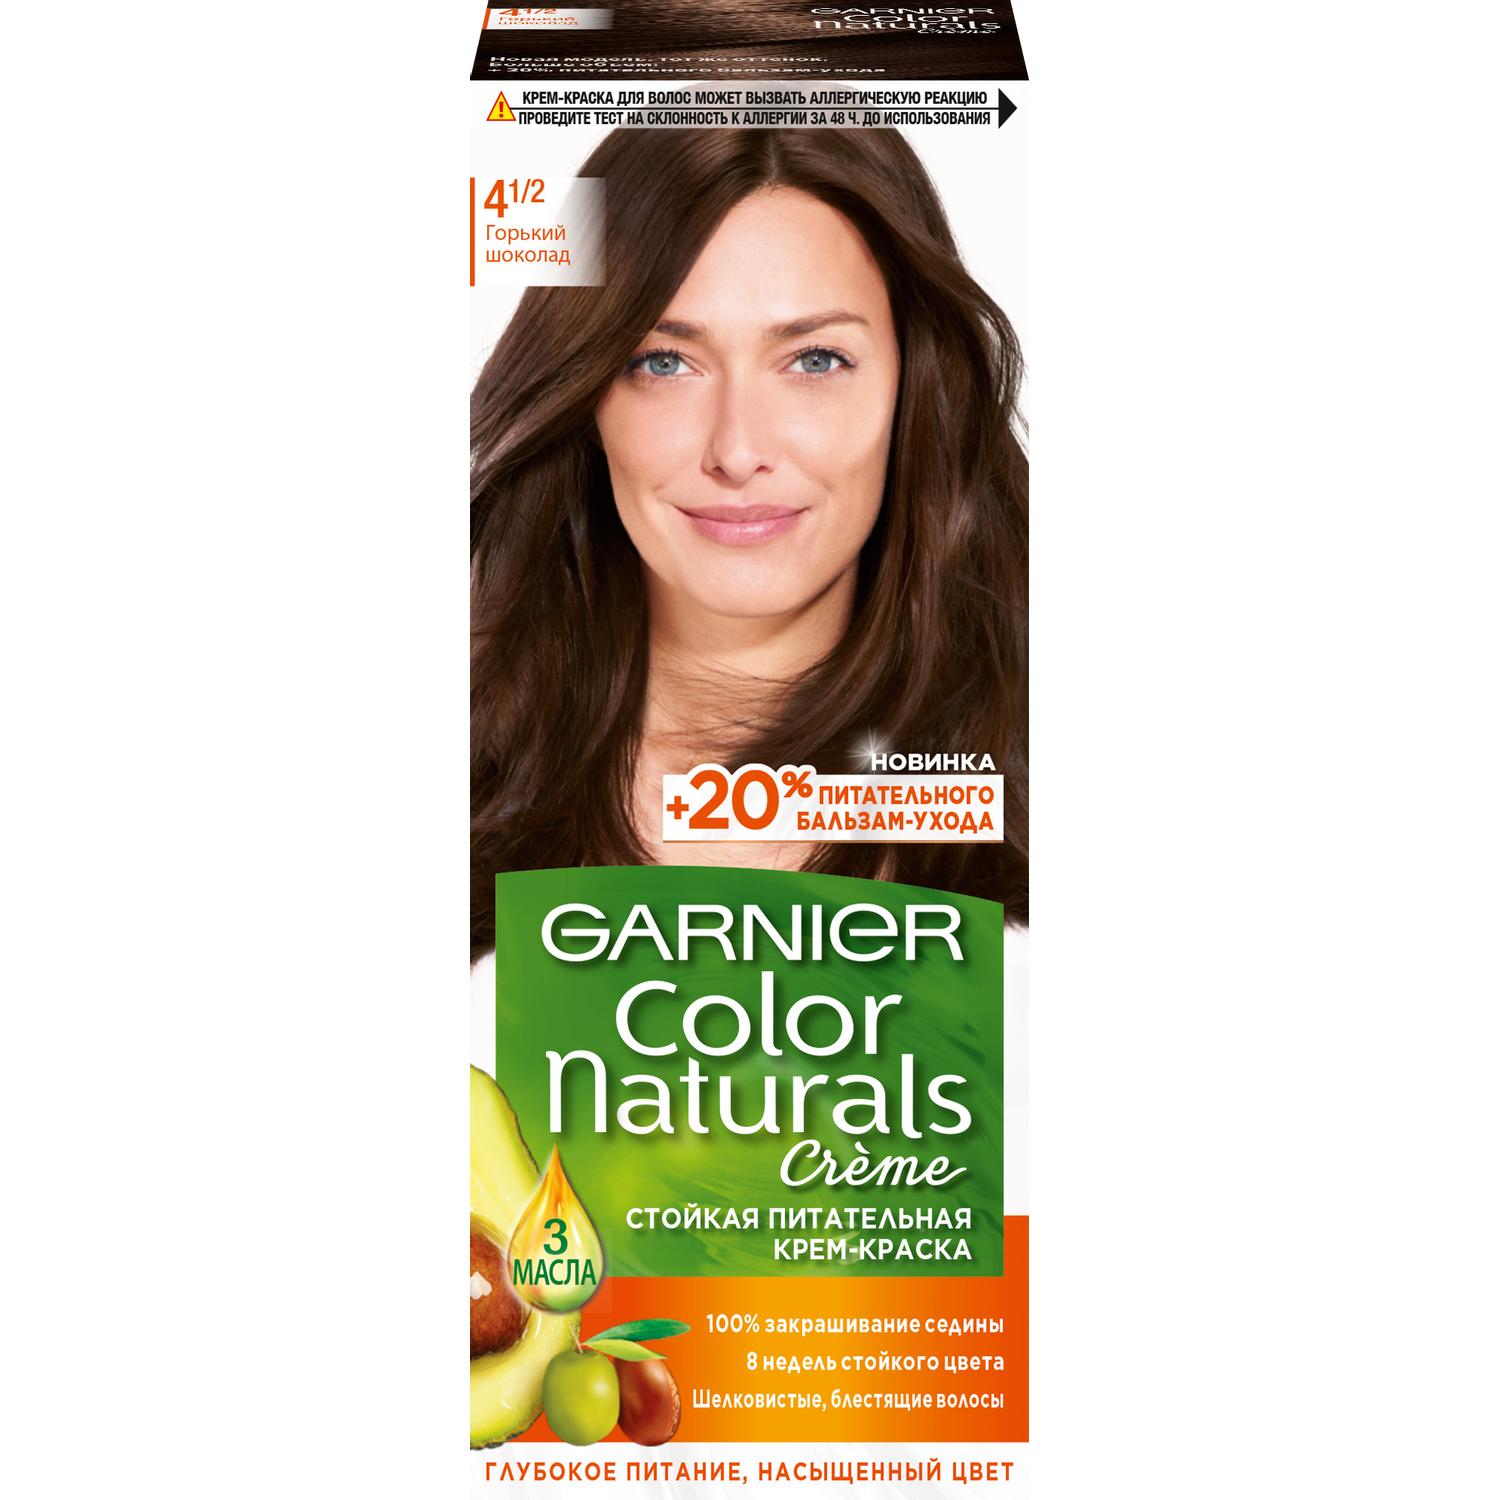 Крем-краска для волос Garnier Color Naturals 4.1/2 Горький Шоколад 110 мл